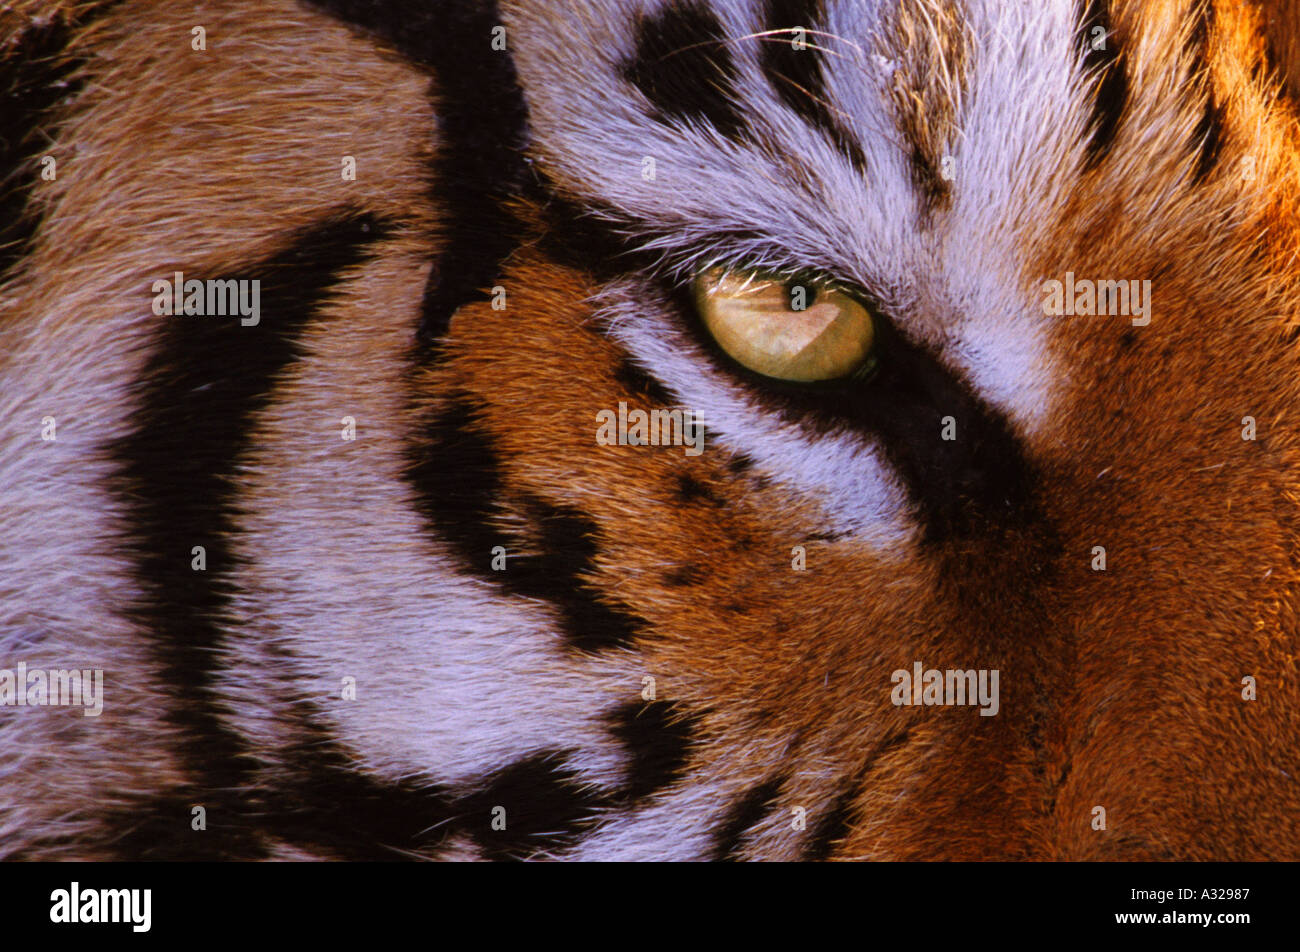 Close up of eye of Siberian Tiger China Stock Photo